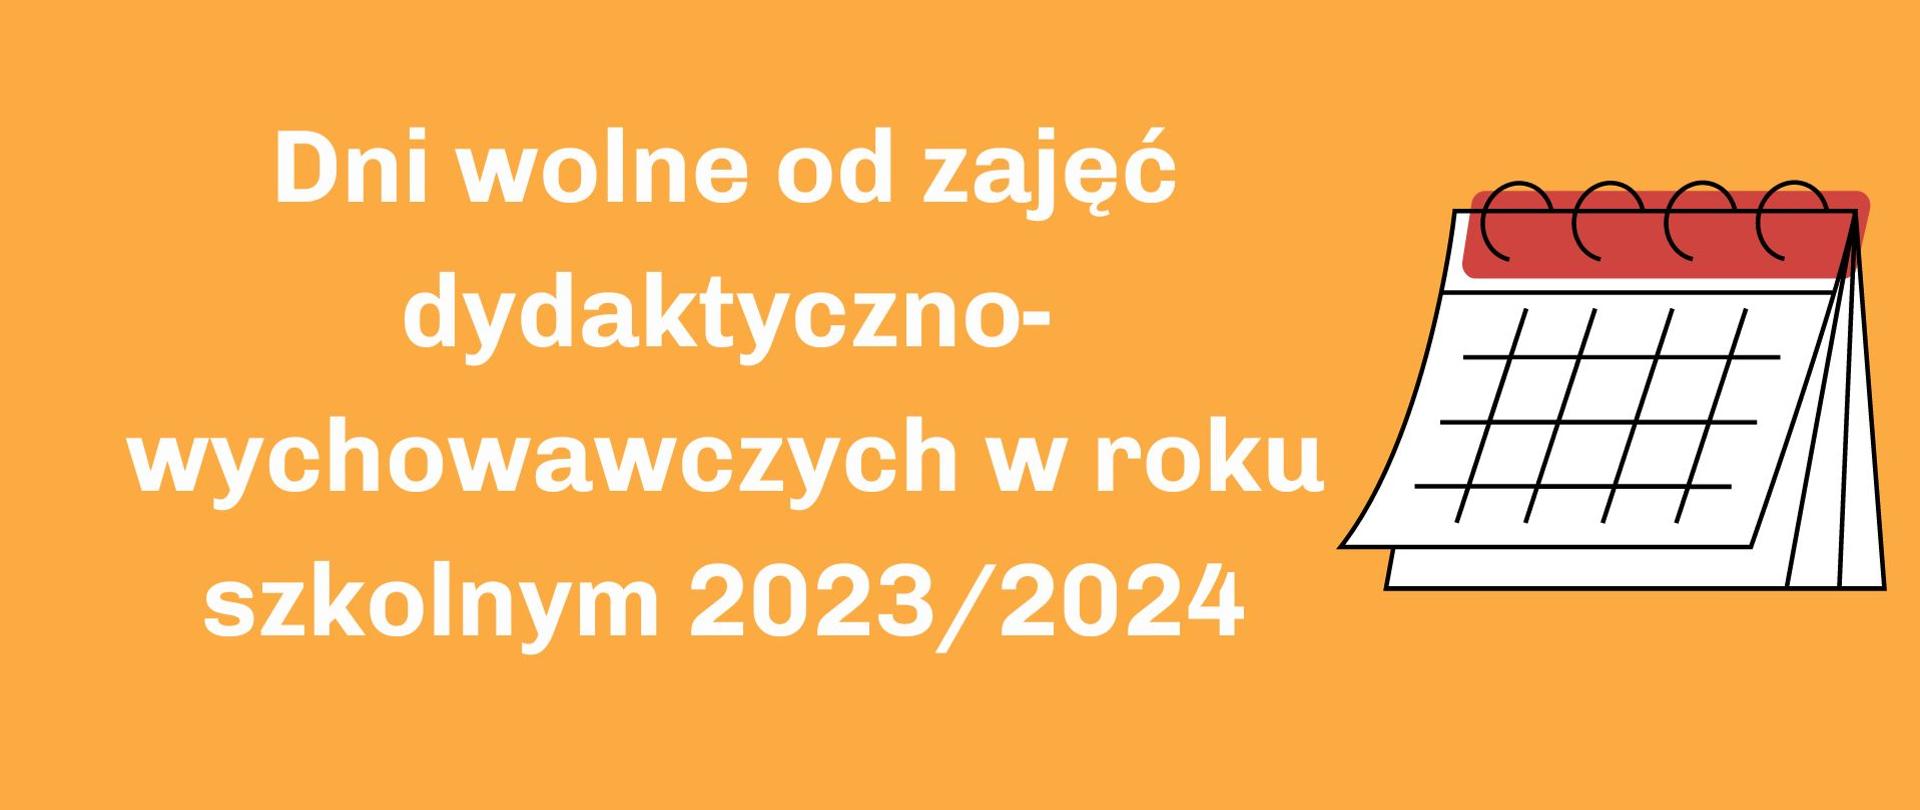 Zarządzenie nr 3-2023/2024 Dyrektora Szkoły Podstawowej Nr 1 im. Juliusza Słowackiego w Trzciance z dnia 11 września 2023 r. w sprawie dodatkowych dni wolnych od zajęć dydaktyczno-wychowawczych w roku szkolnym 2023/2024